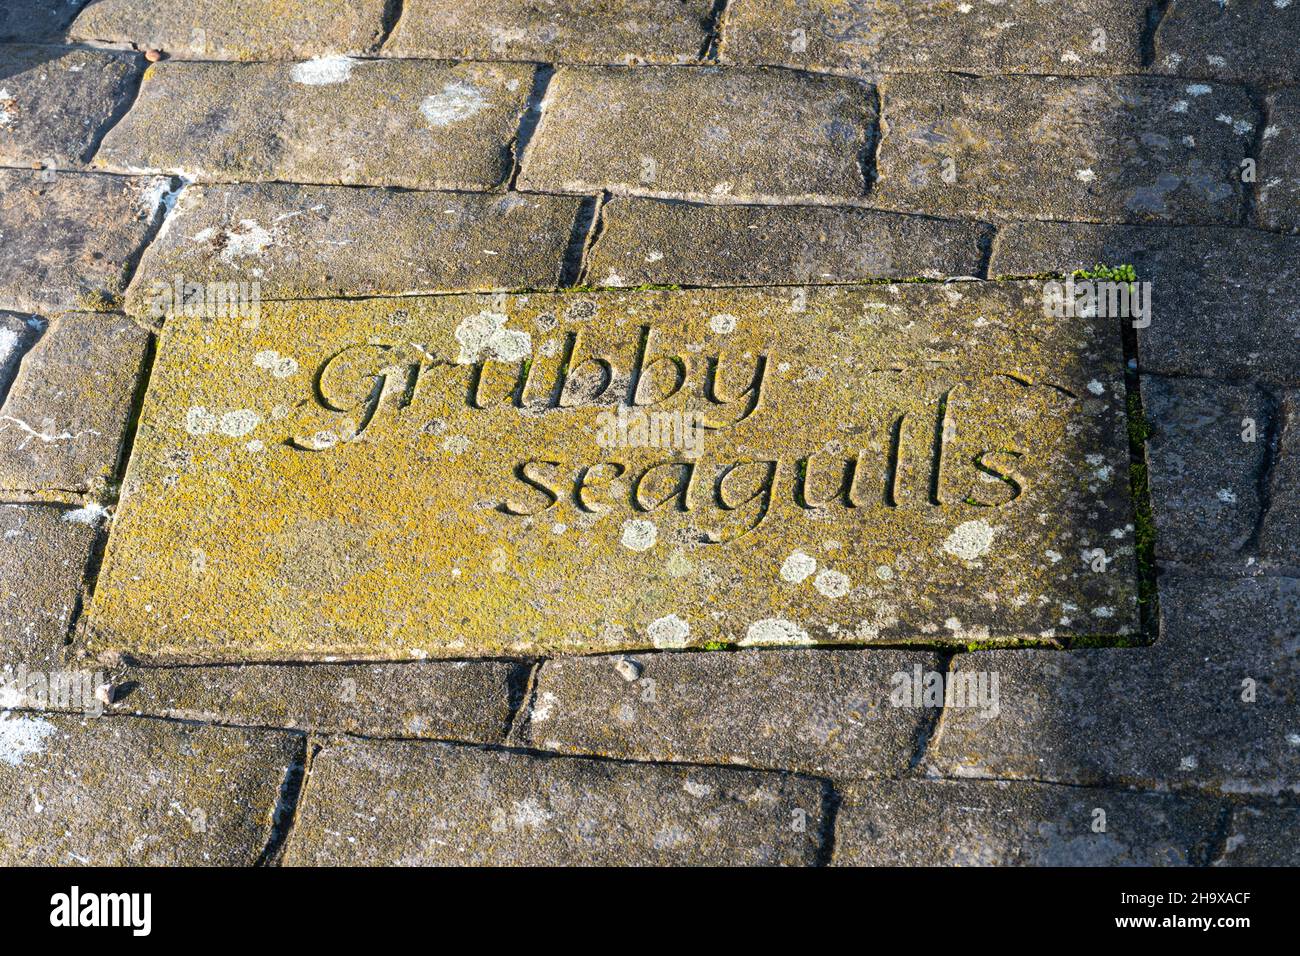 Plaque de pierre sculptée dans le mur du port de Maryport avec les mots 'grubby seagulls', Cumbria, Angleterre, Royaume-Uni Banque D'Images